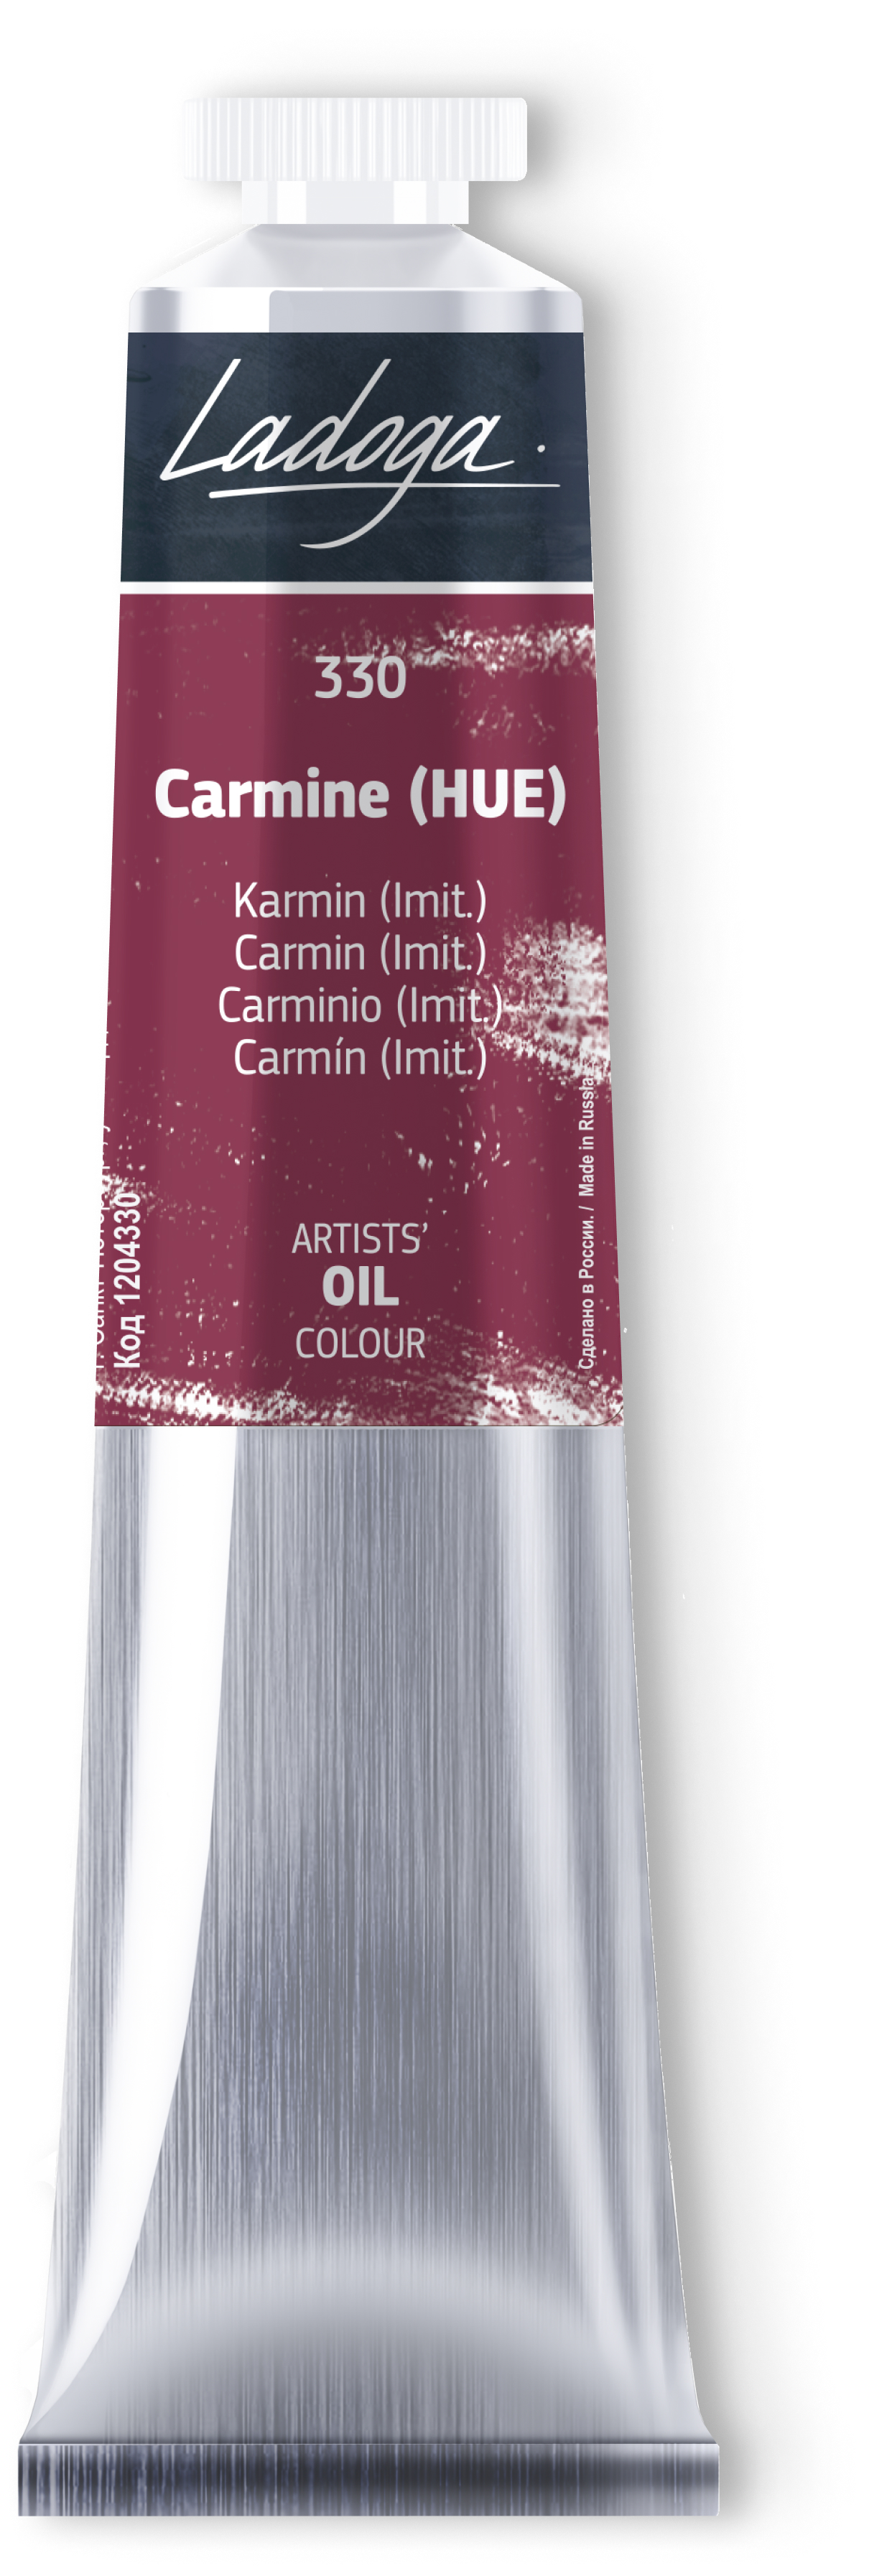 Oil colour "Ladoga", Carmine (HUE), tube, № 330